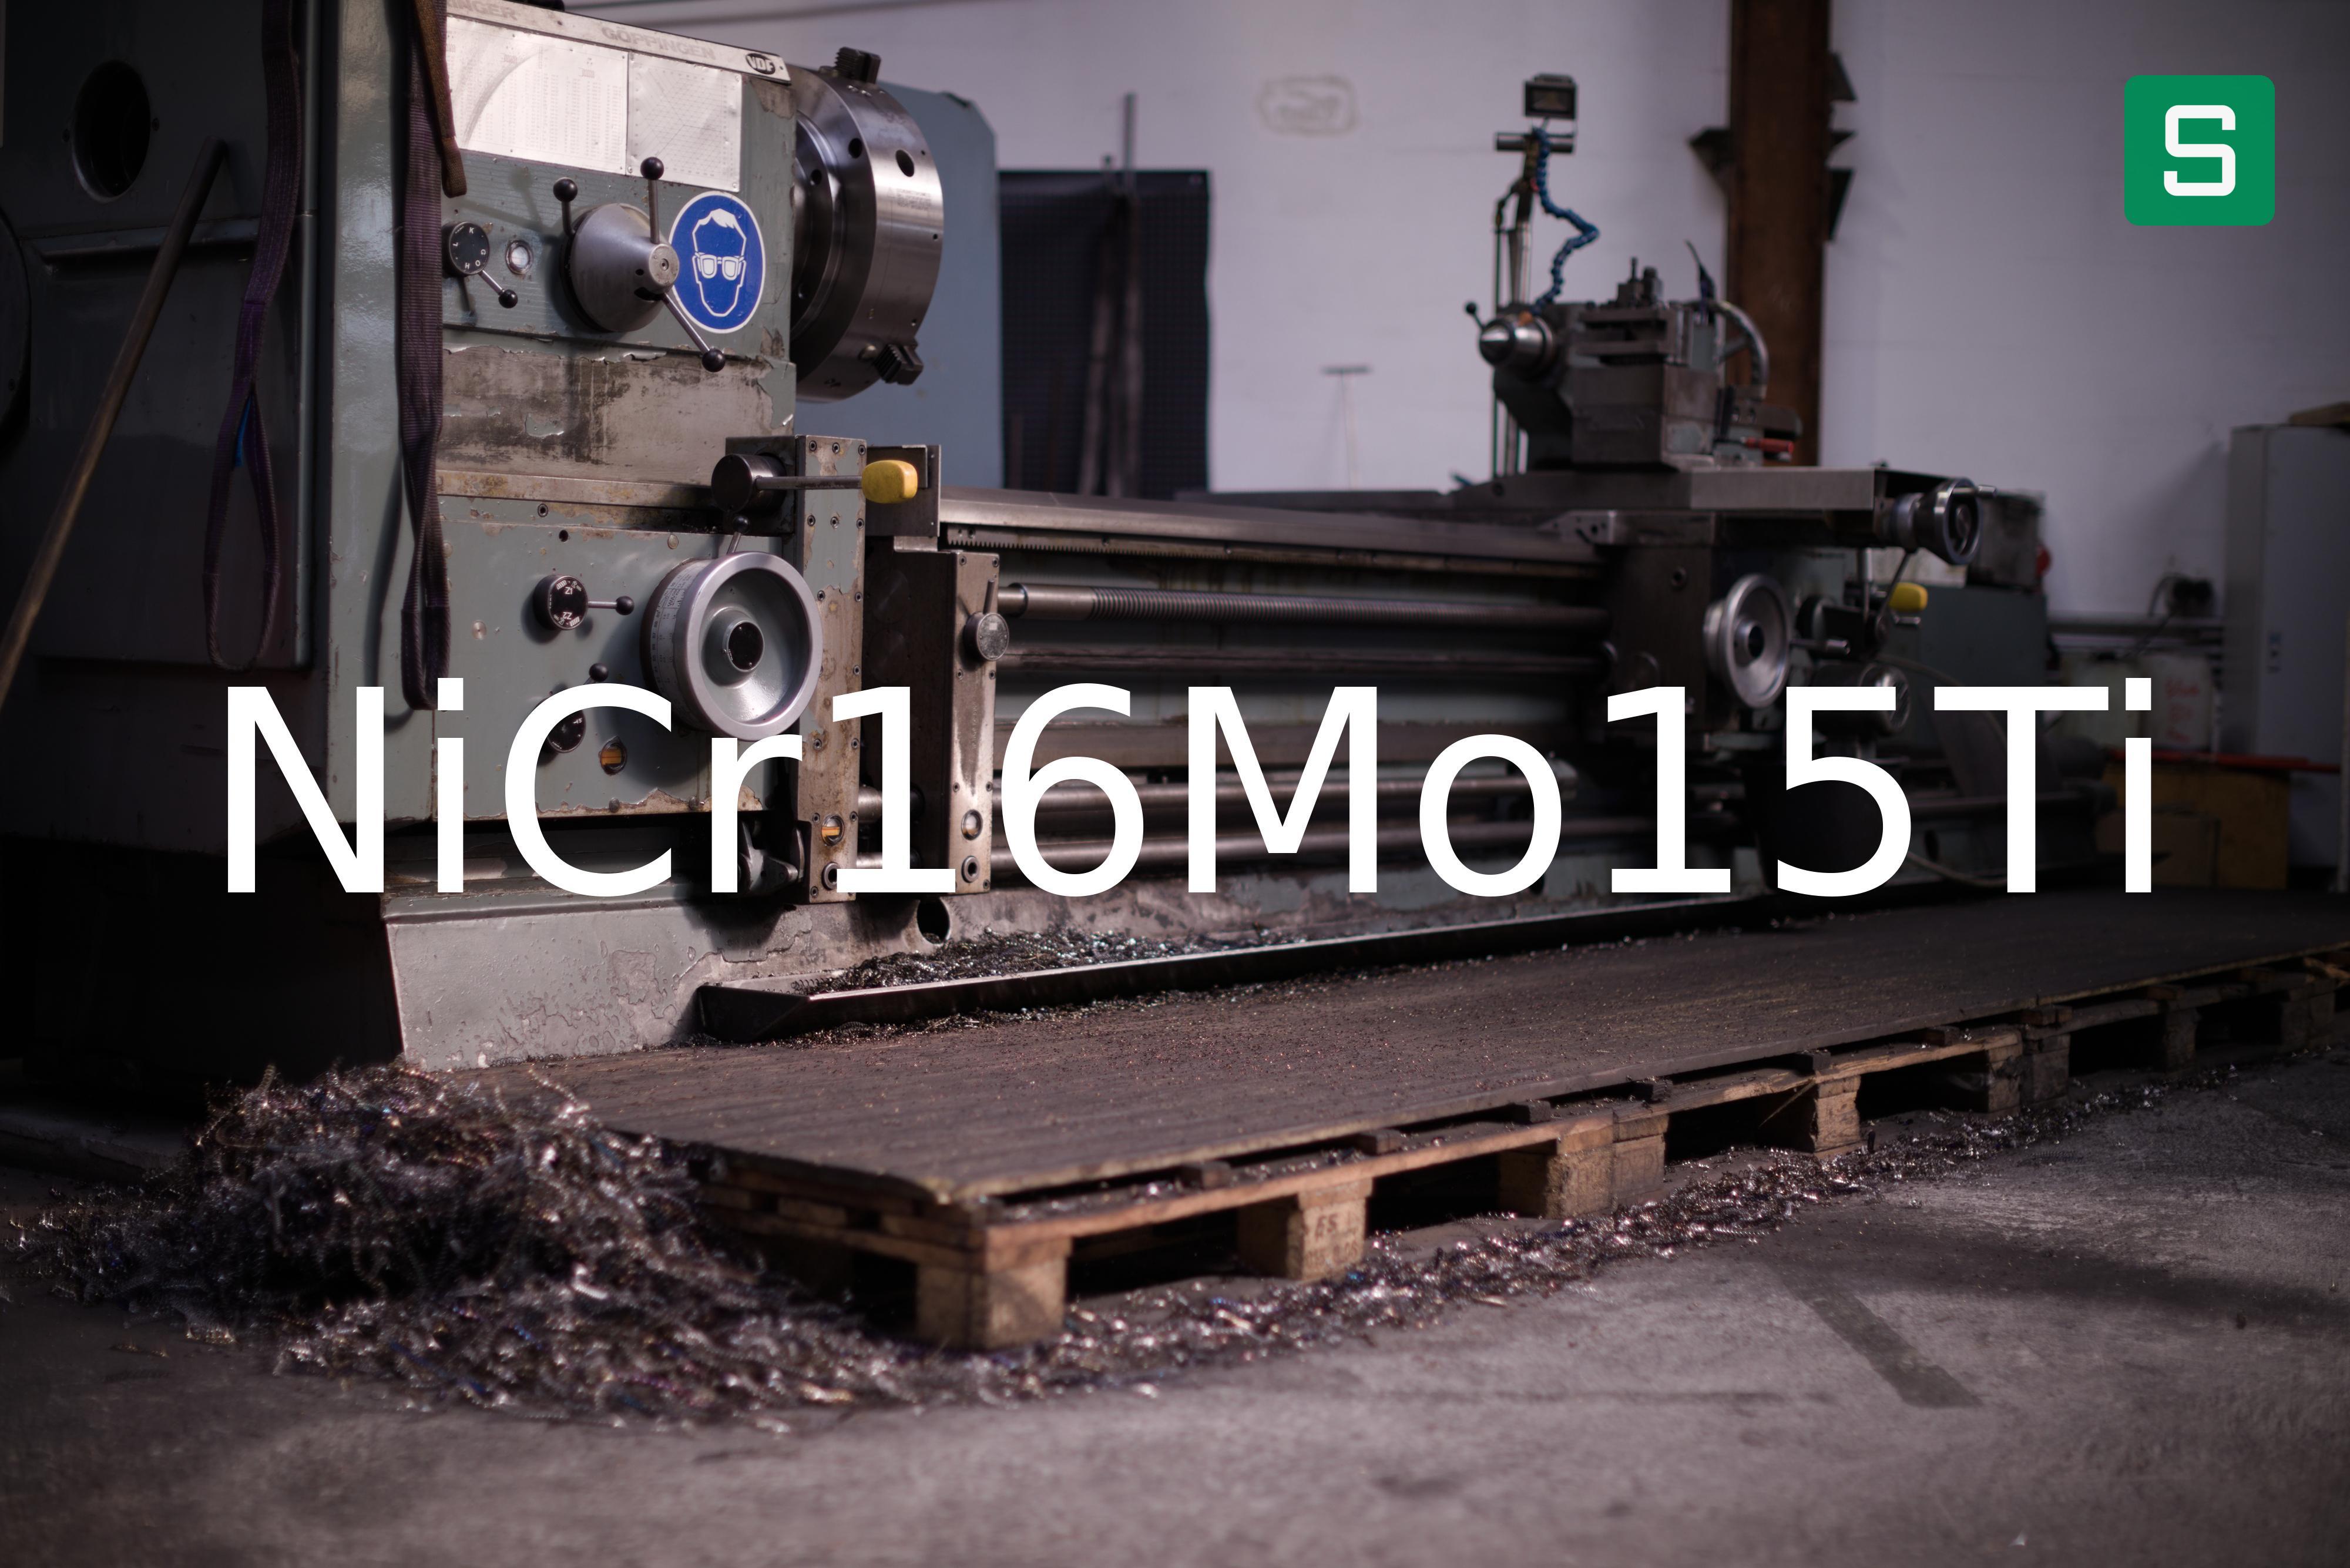 Steel Material: NiCr16Mo15Ti